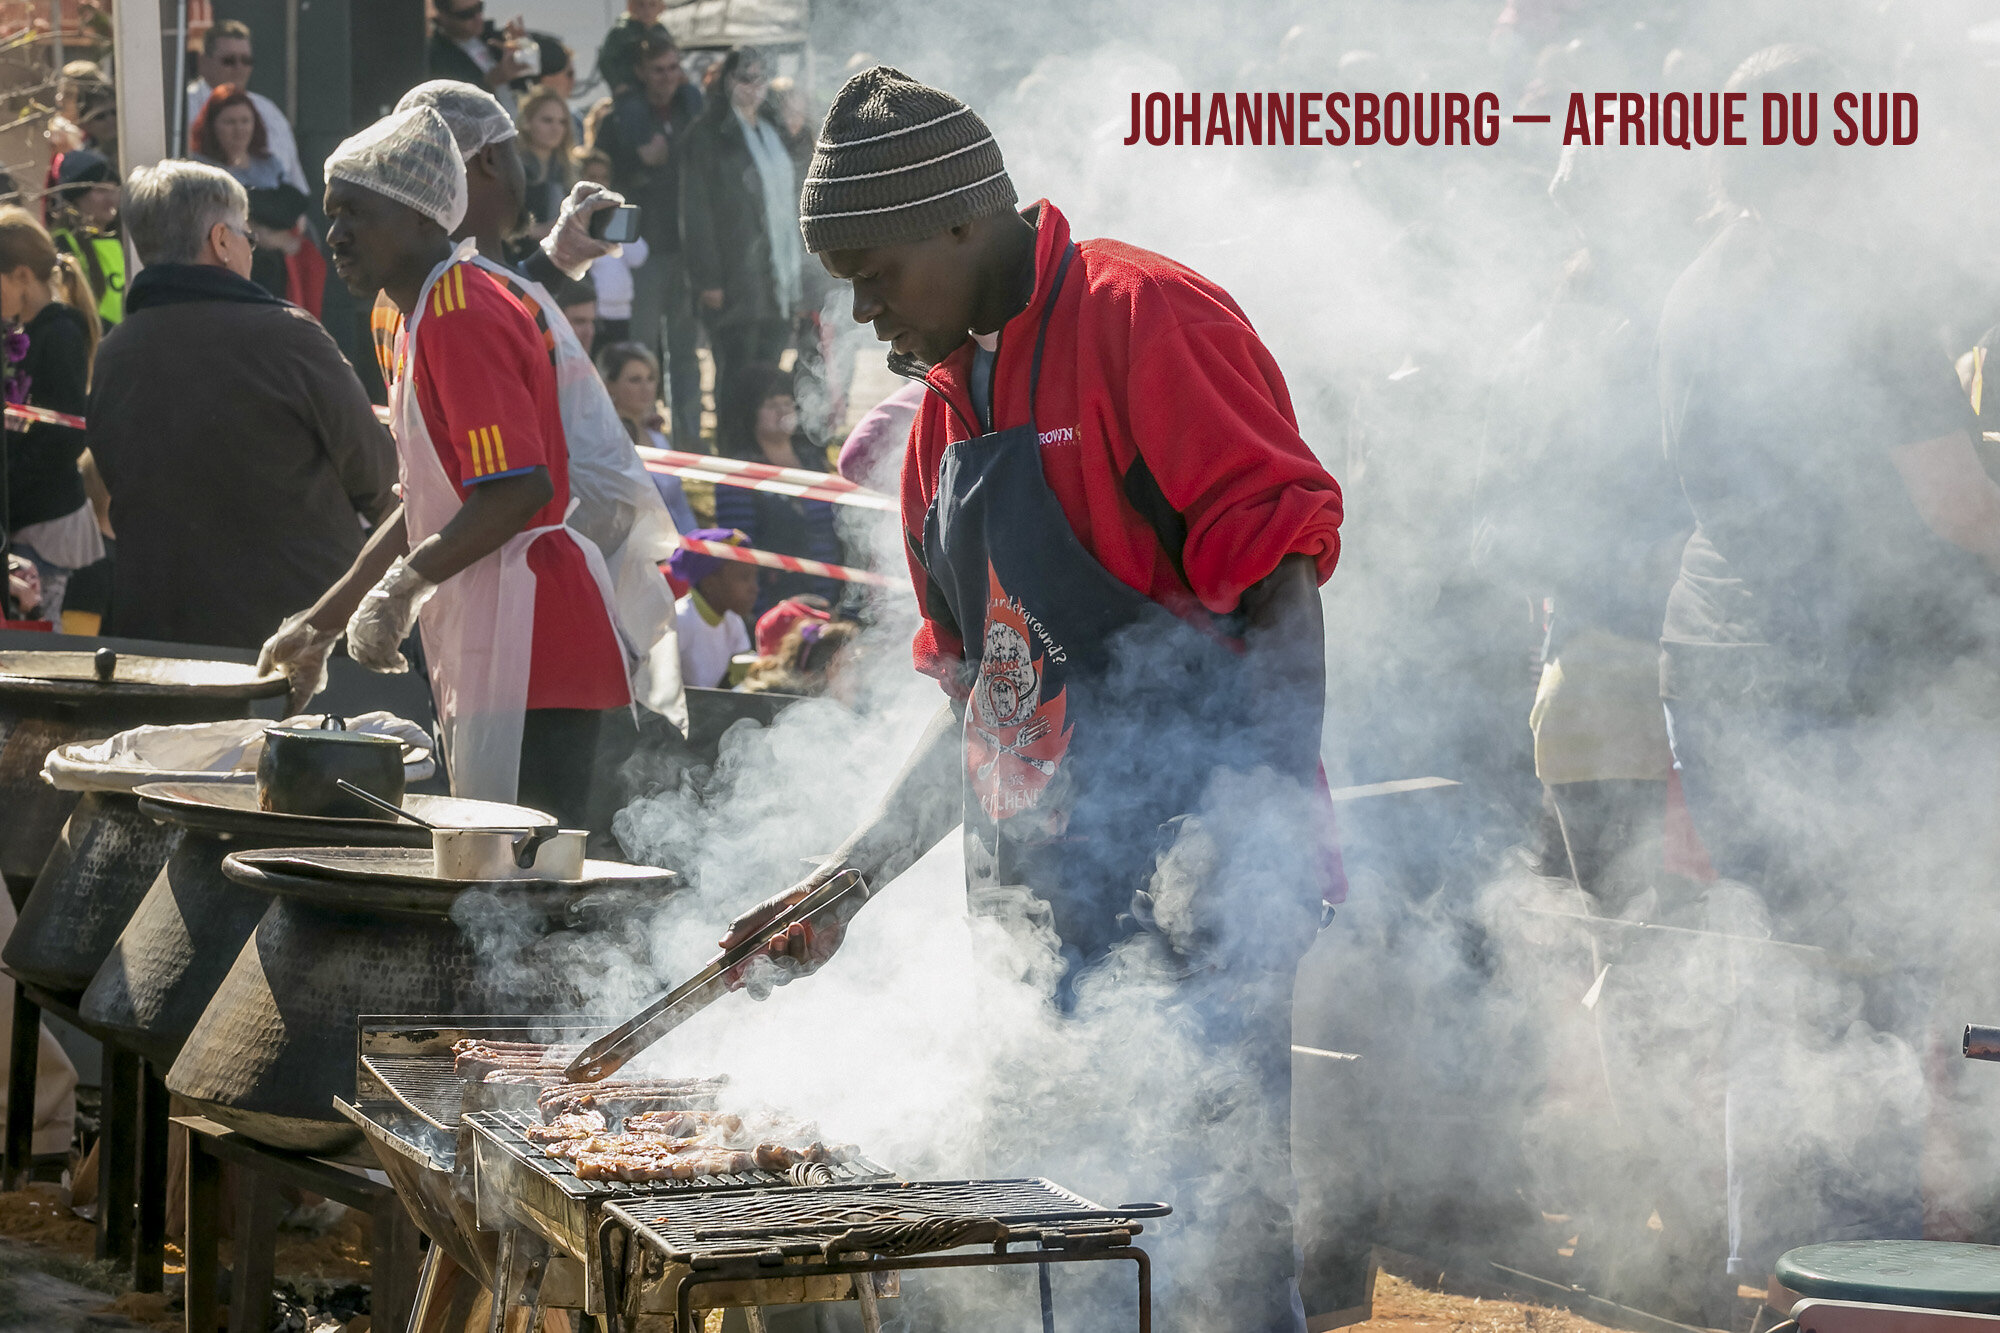   Johannesbourg  — Afrique du Sud — 7 juin 2014 — À un marché fermier, deux cuisiniers, debout à leur stand, préparent des plats à base de grillades. —  Sunshine Seeds  